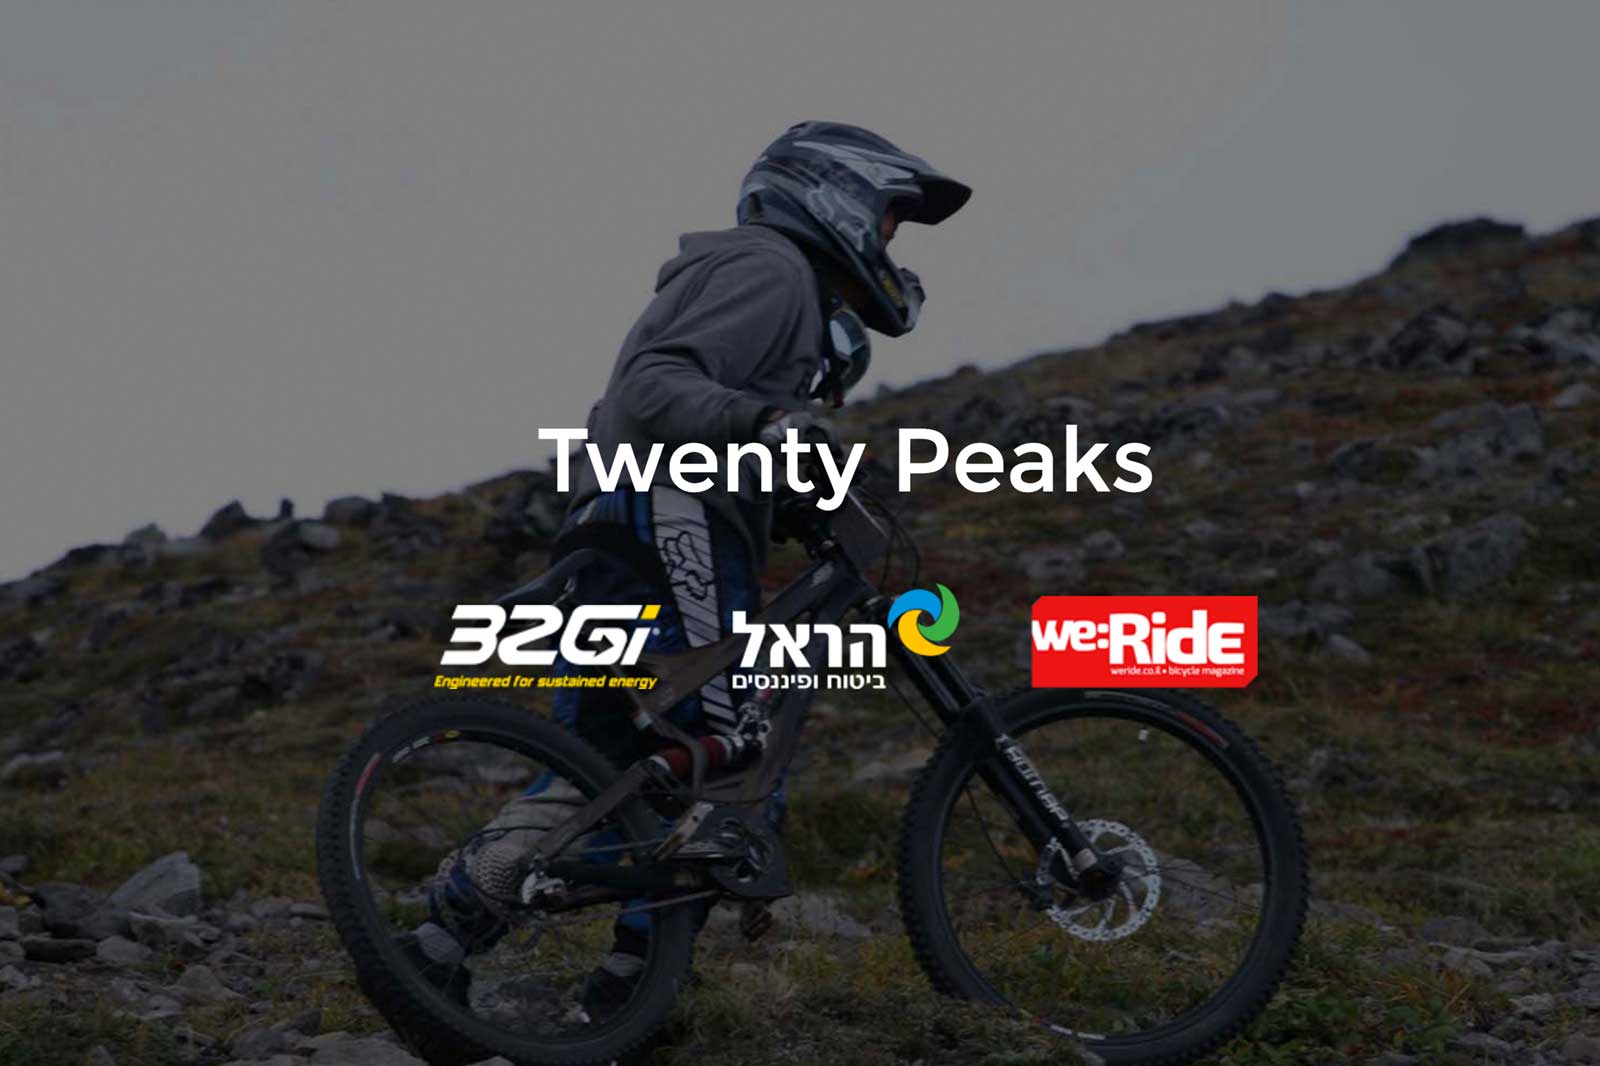 Twenty Peaks website screenshot - Hero image of bicycles and sponsors